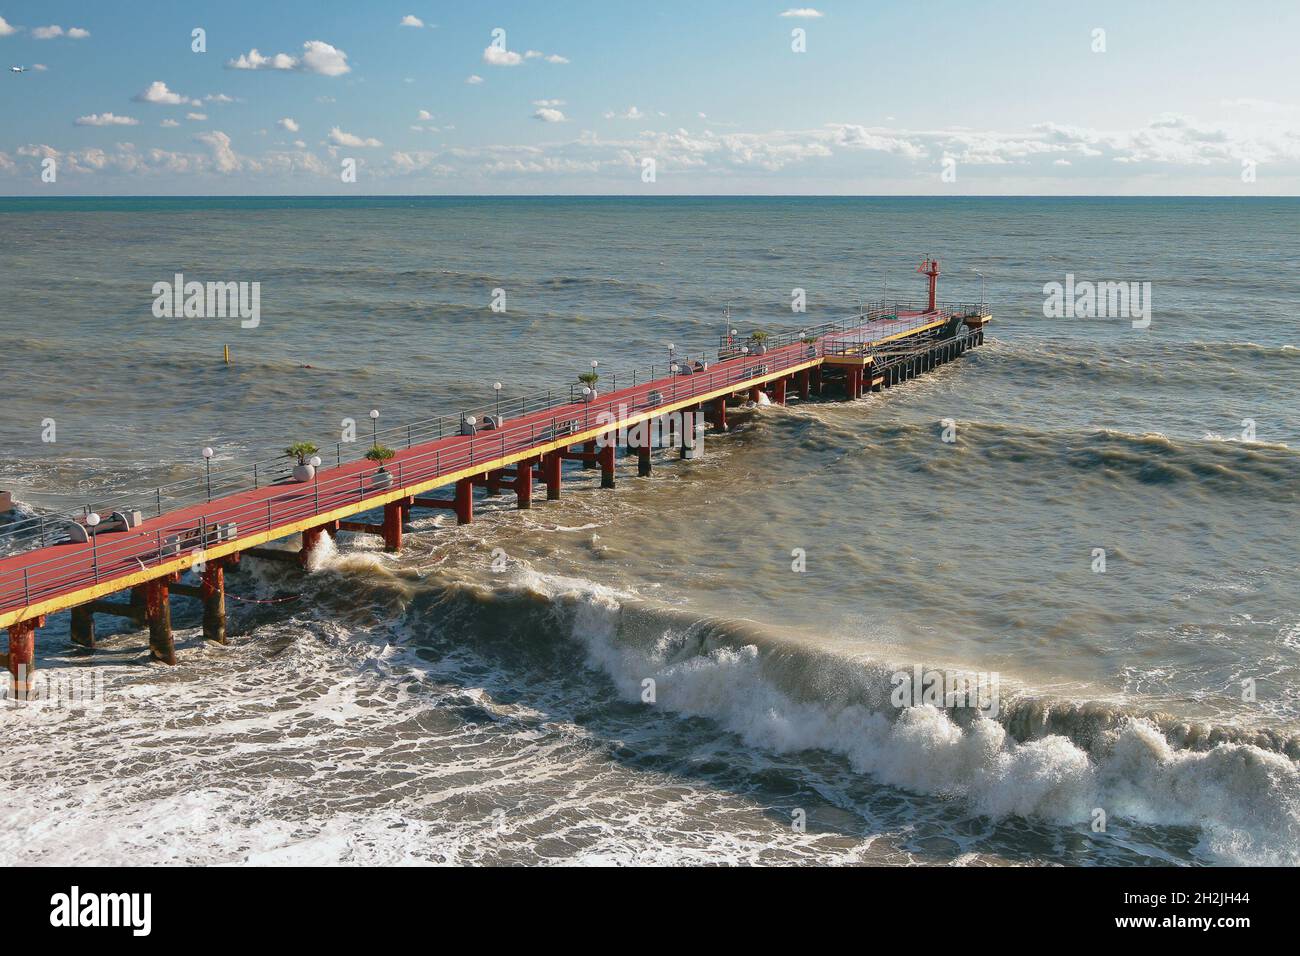 Muelle y olas del mar. Adler, Sochi, Rusia Foto de stock